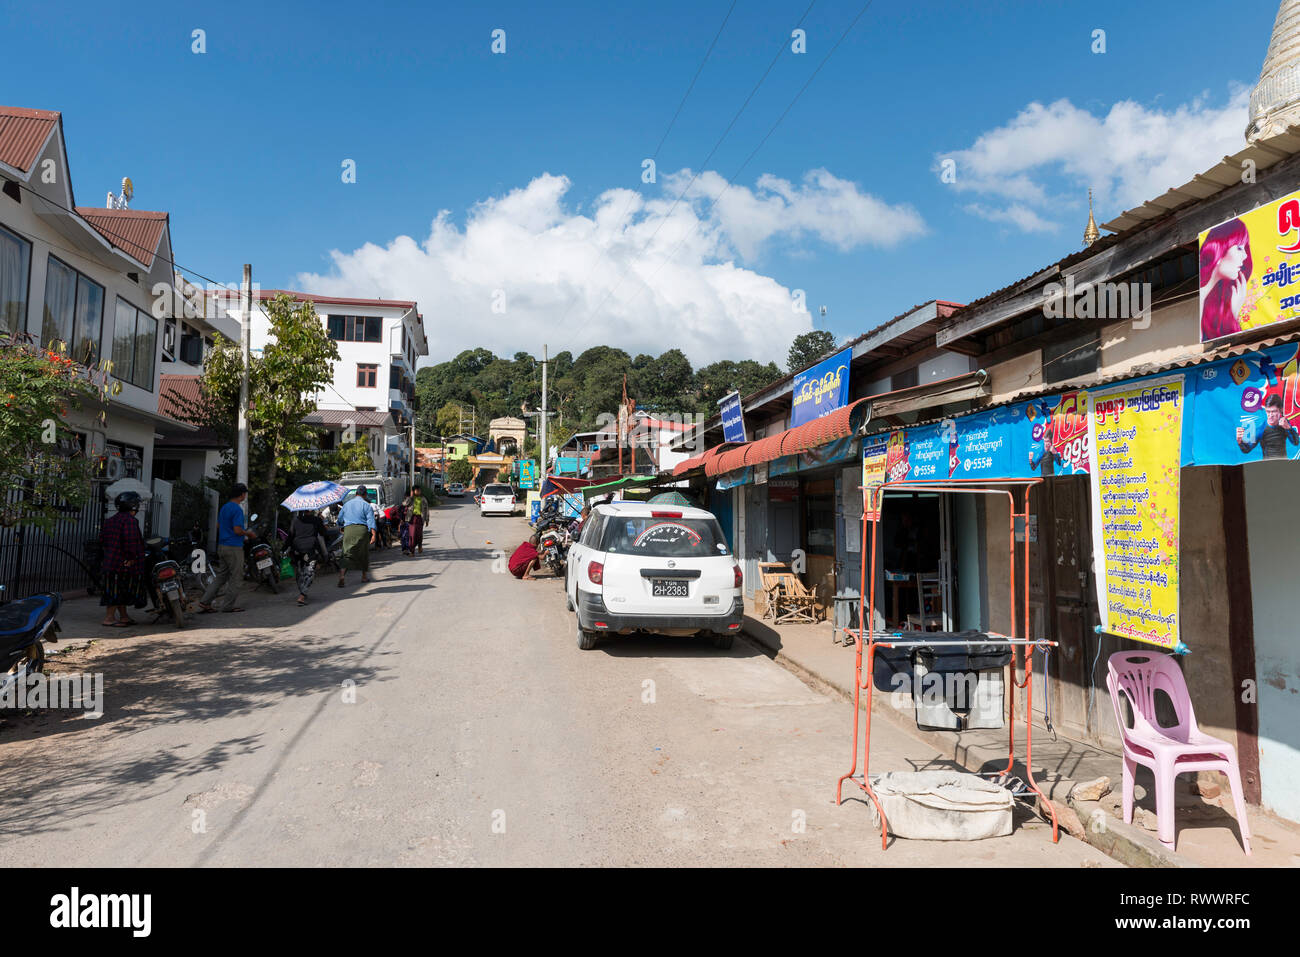 KALAW, MYANMAR - 25 novembre, 2018 : horizontale photo d'ordinaire pour la rue avec des magasins et des voitures dans le centre de Kalaw, Myanmar Banque D'Images